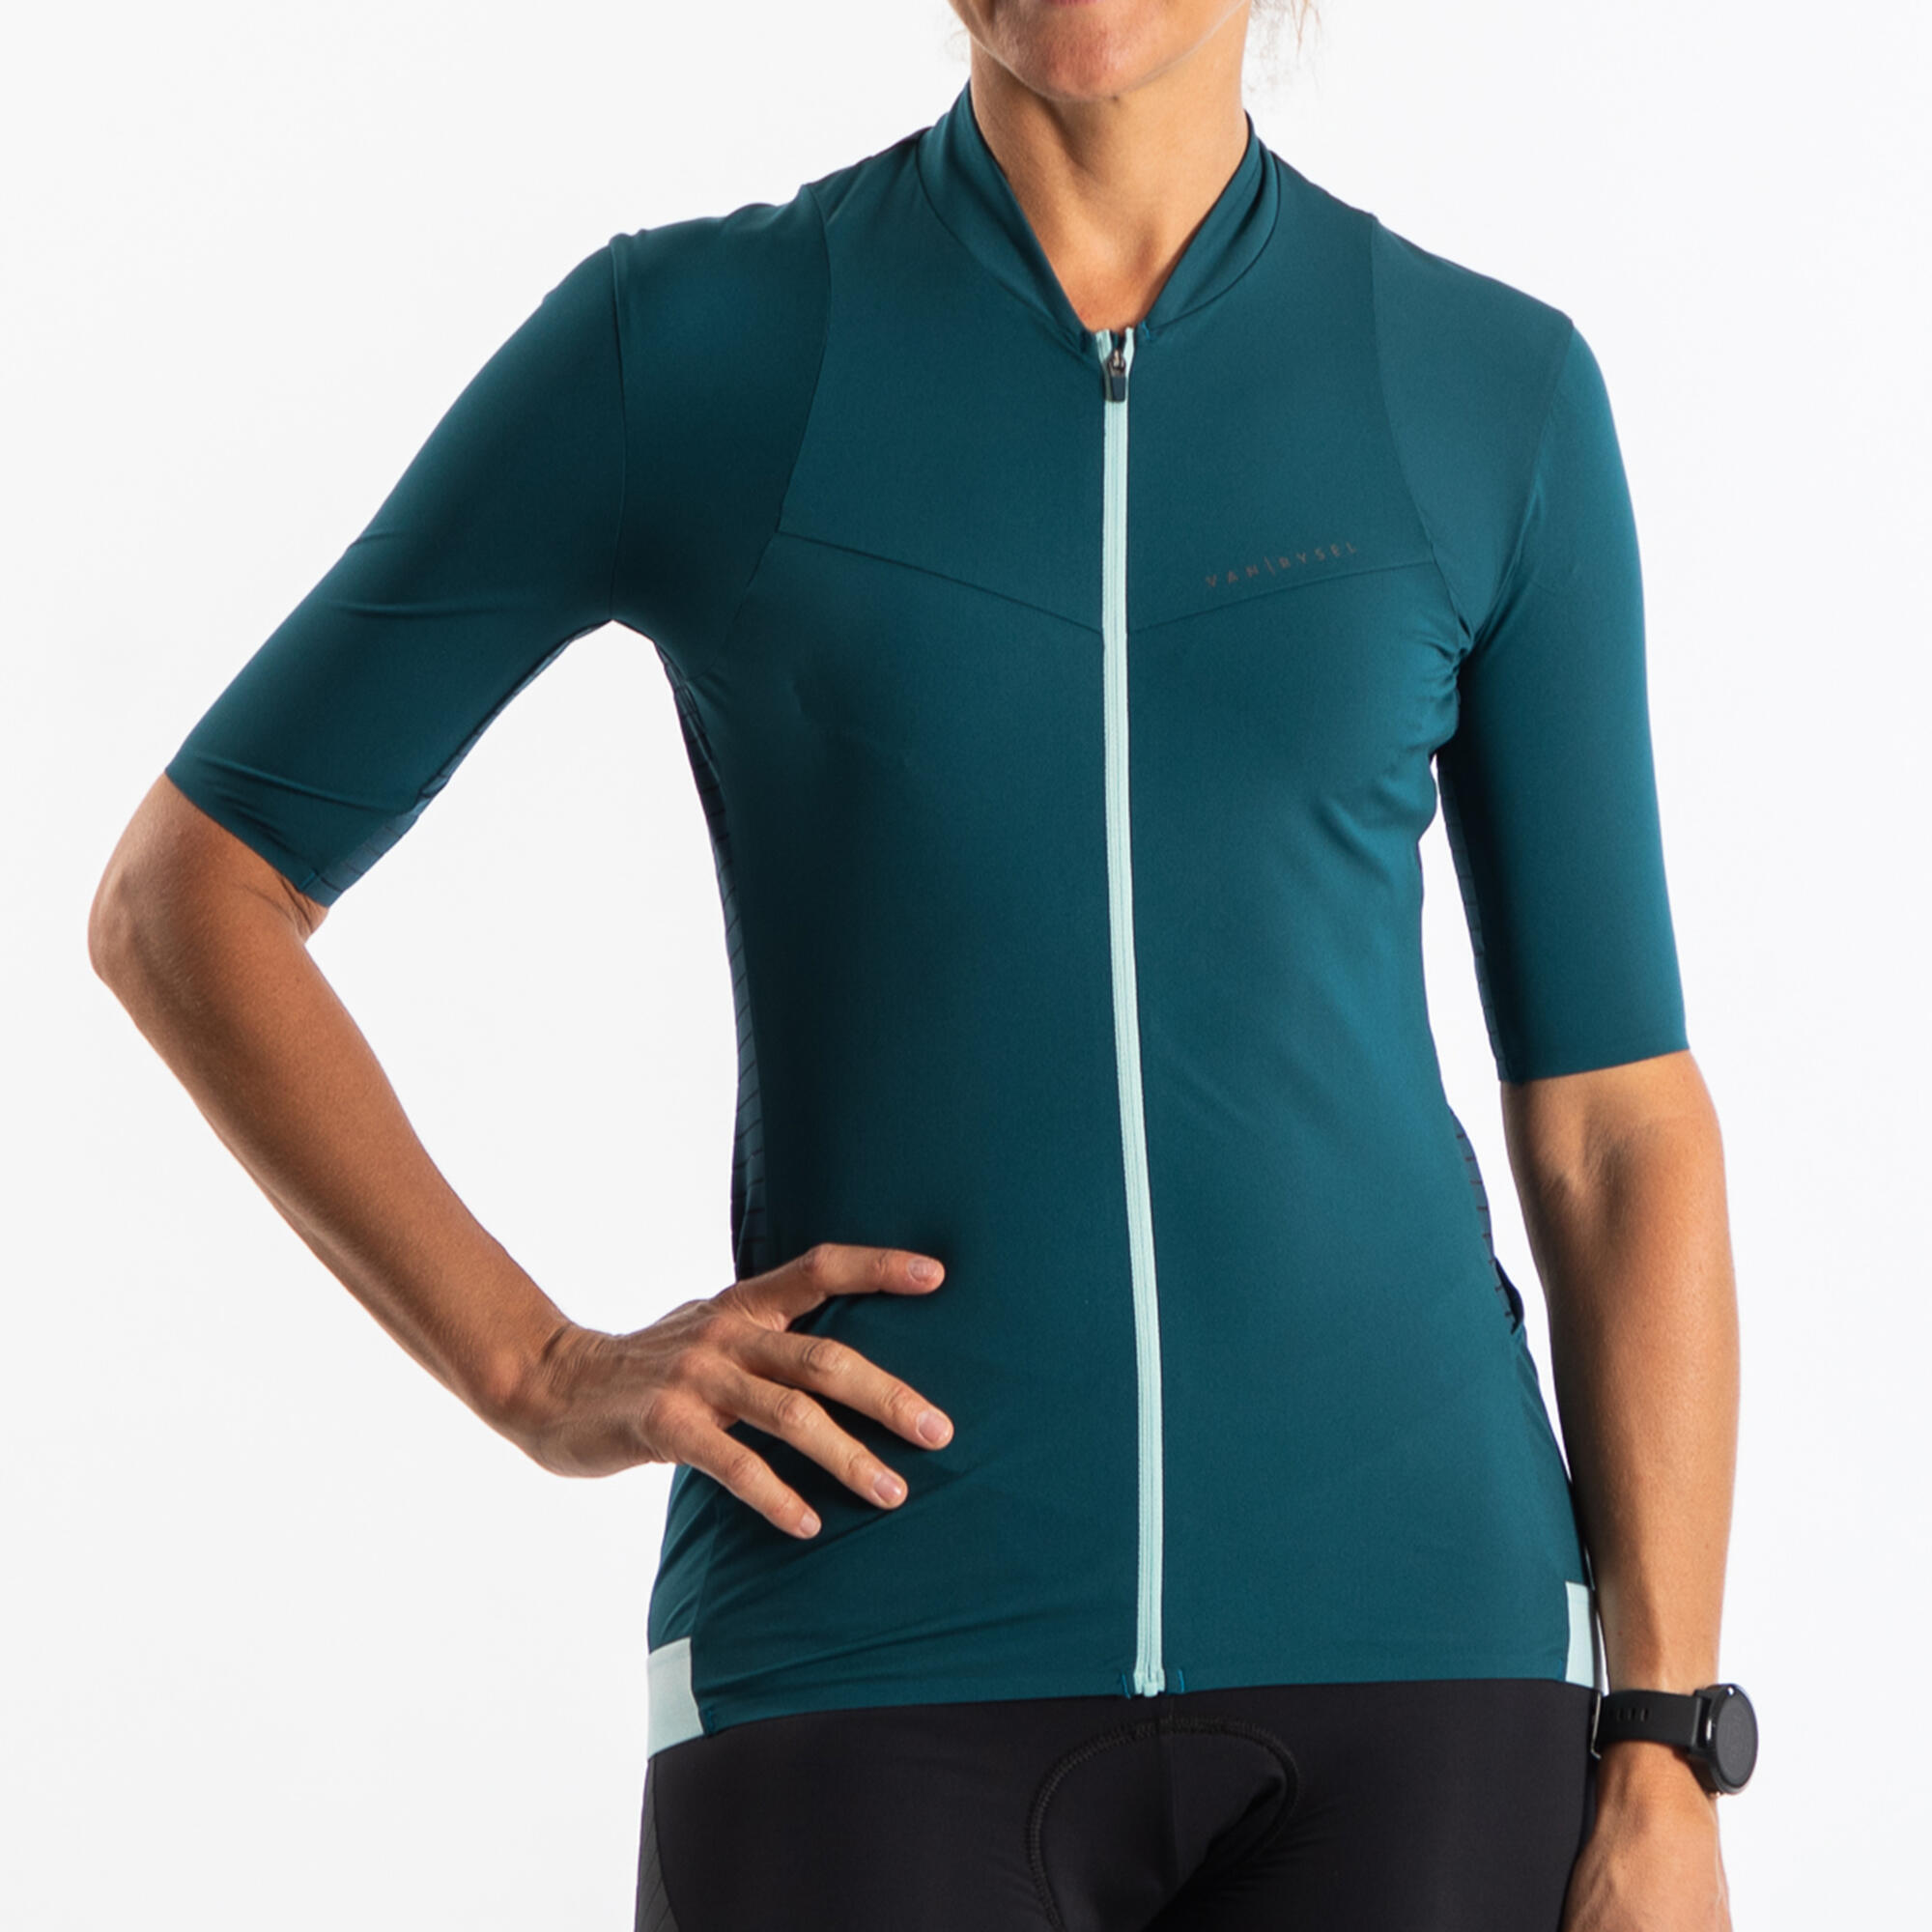 Women's Short-Sleeved Summer Road Cycling Jersey Endurance - Emerald 5/7